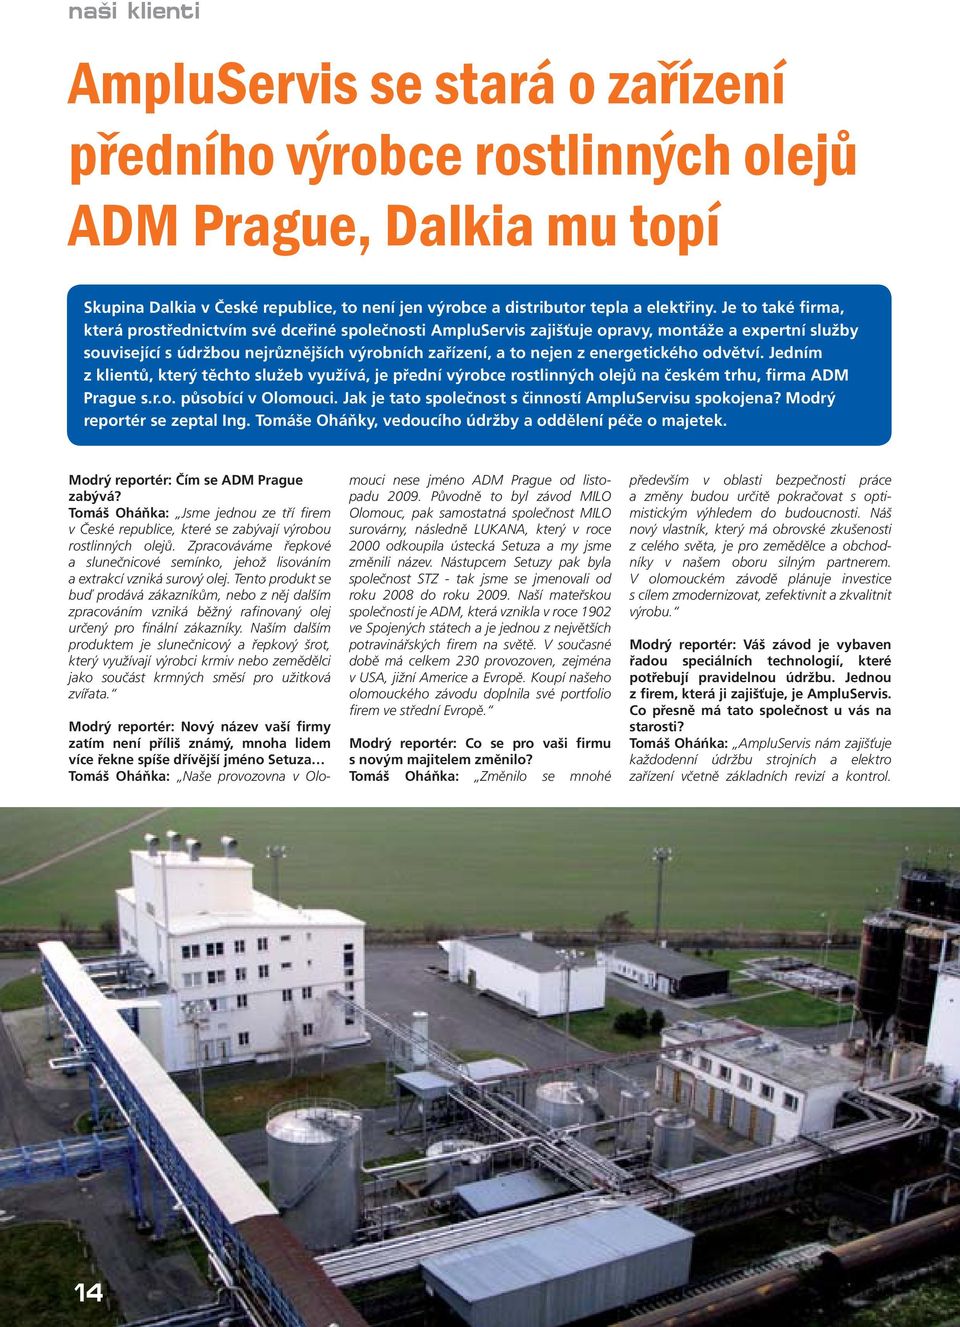 energetického odvětví. Jedním z klientů, který těchto služeb využívá, je přední výrobce rostlinných olejů na českém trhu, firma ADM Prague s.r.o. působící v Olomouci.